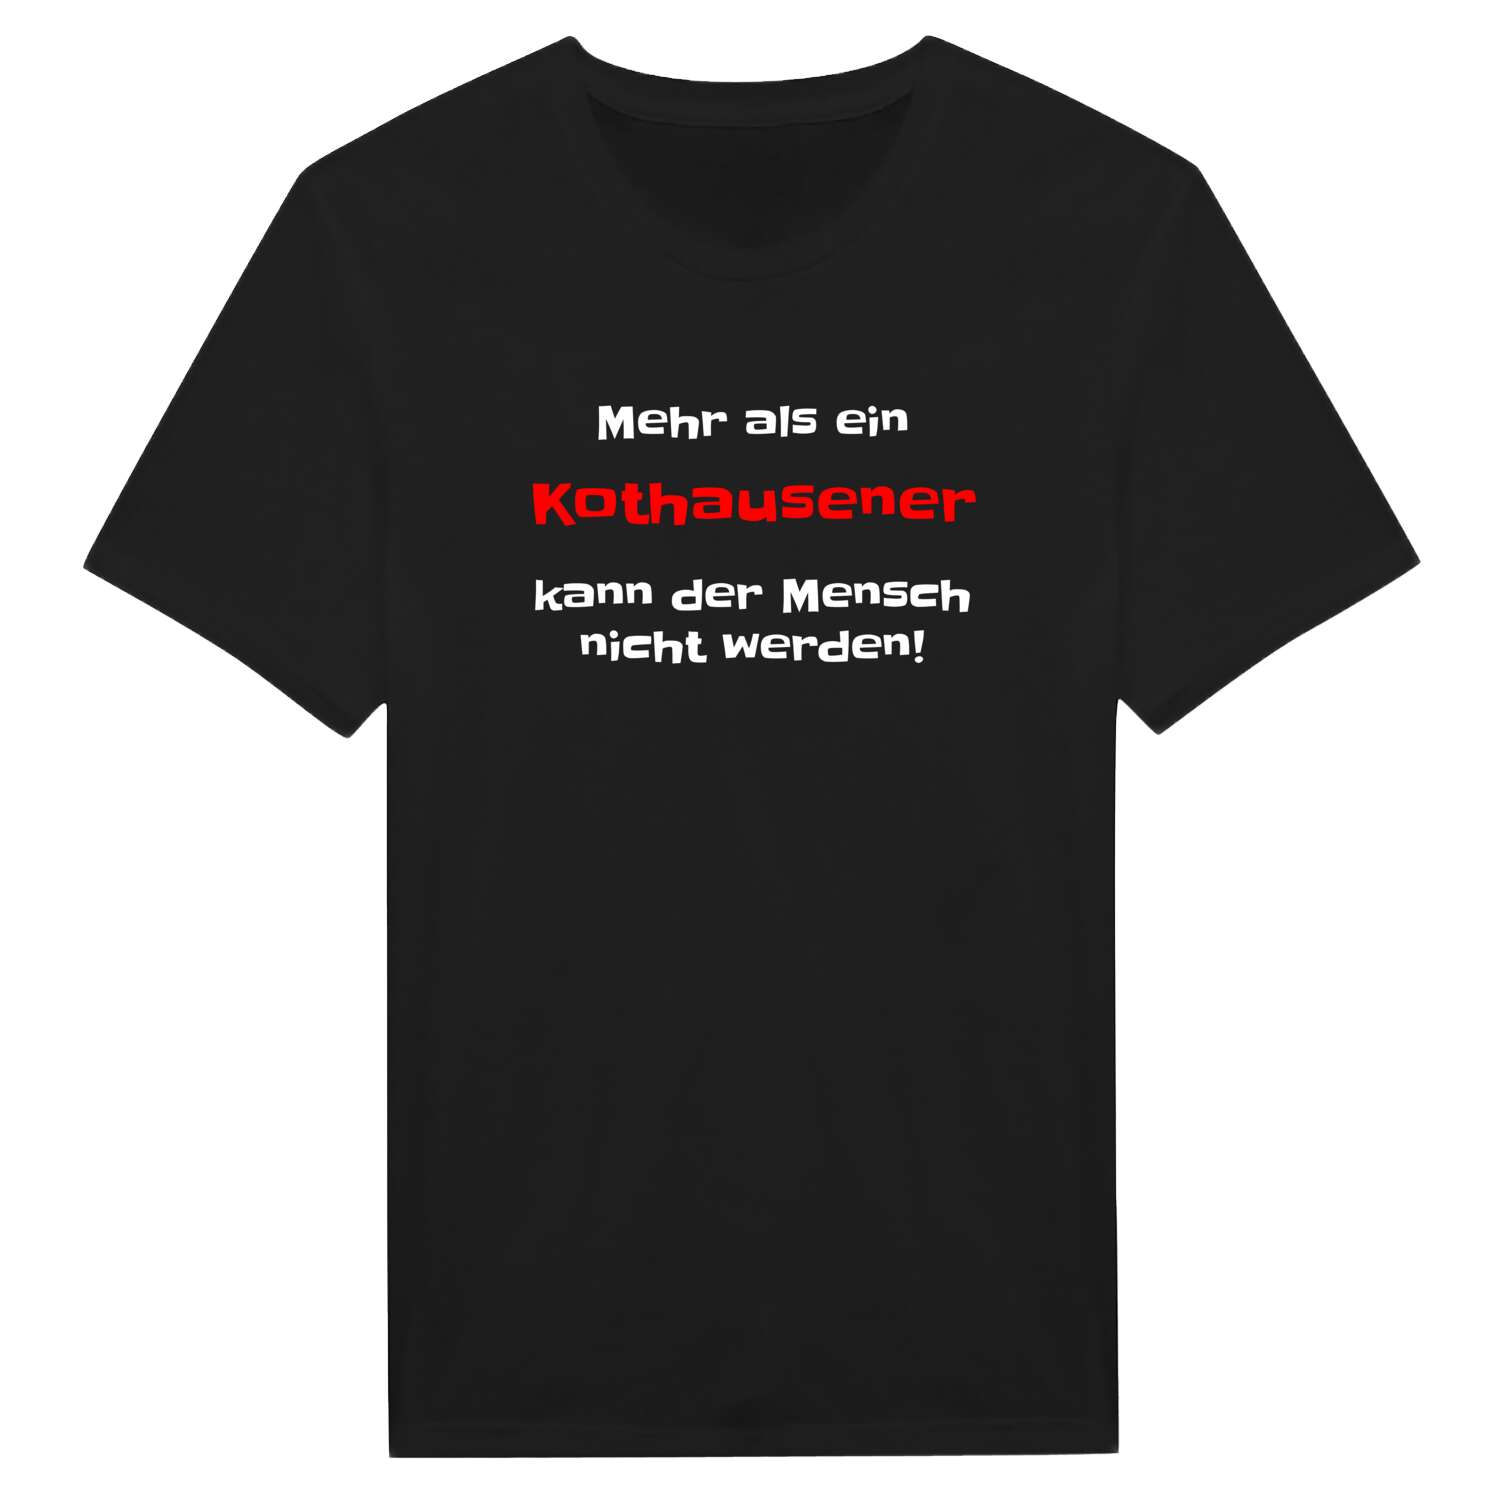 Kothausen T-Shirt »Mehr als ein«